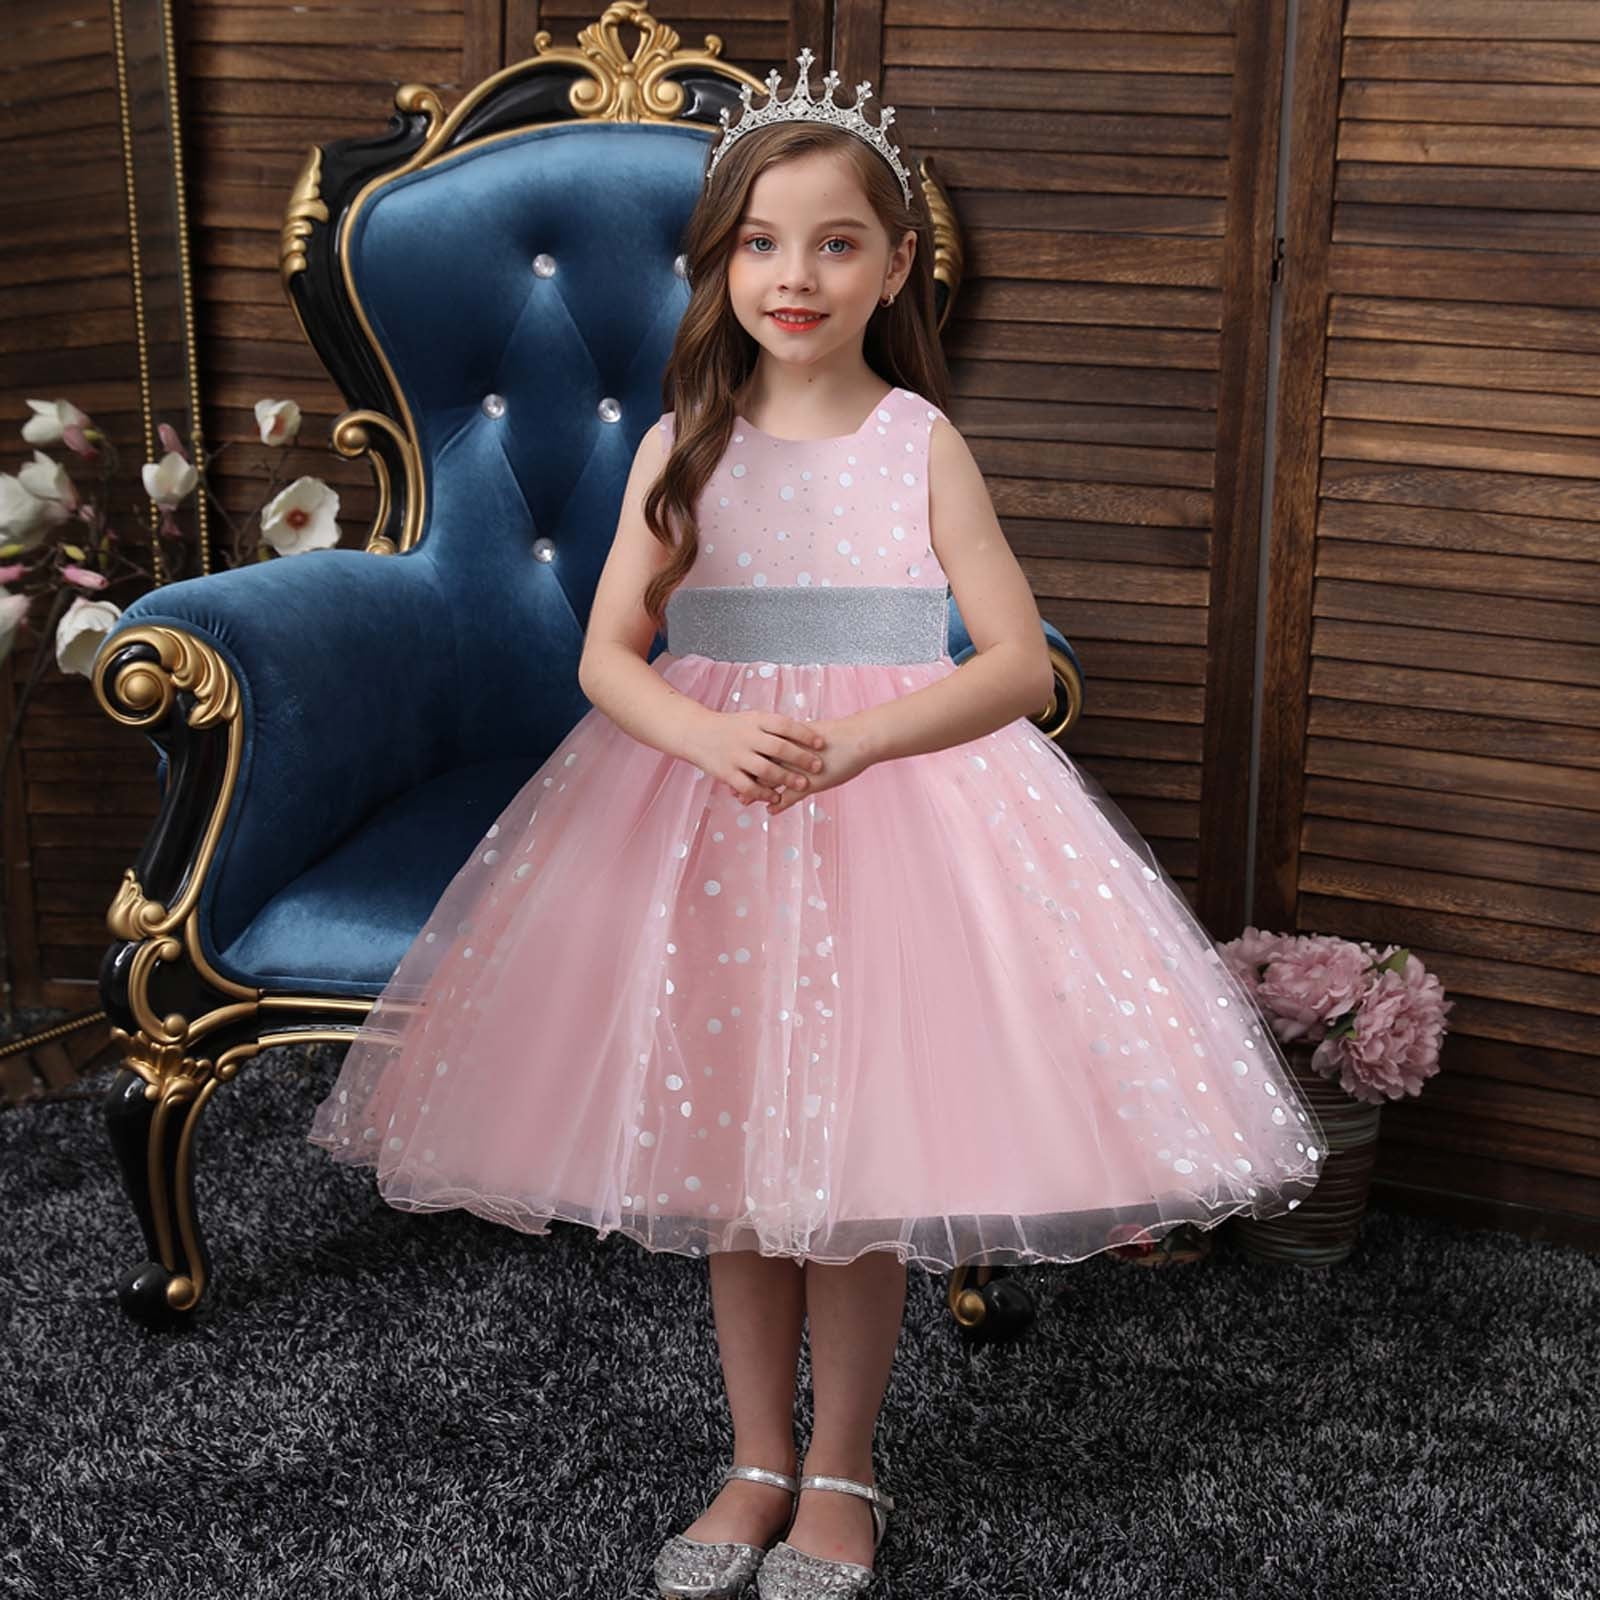 Share 125+ toddler girl dresses best